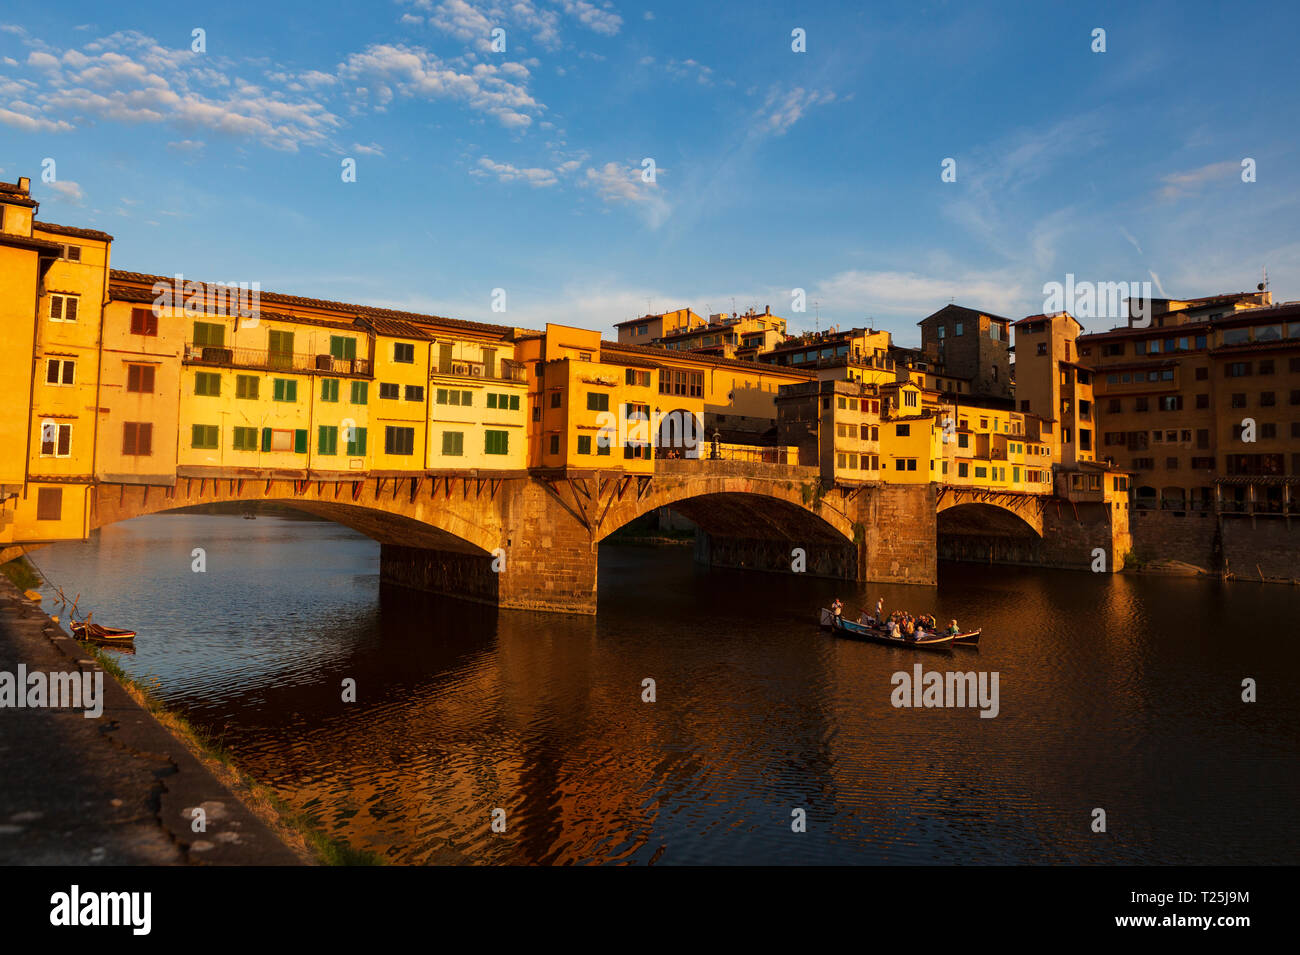 El Ponte Vecchio, una piedra medieval spandrel cerrado de arco rebajado puente sobre el río Arno, en Florencia, Italia, señaló que aún tiene tiendas construidas Foto de stock